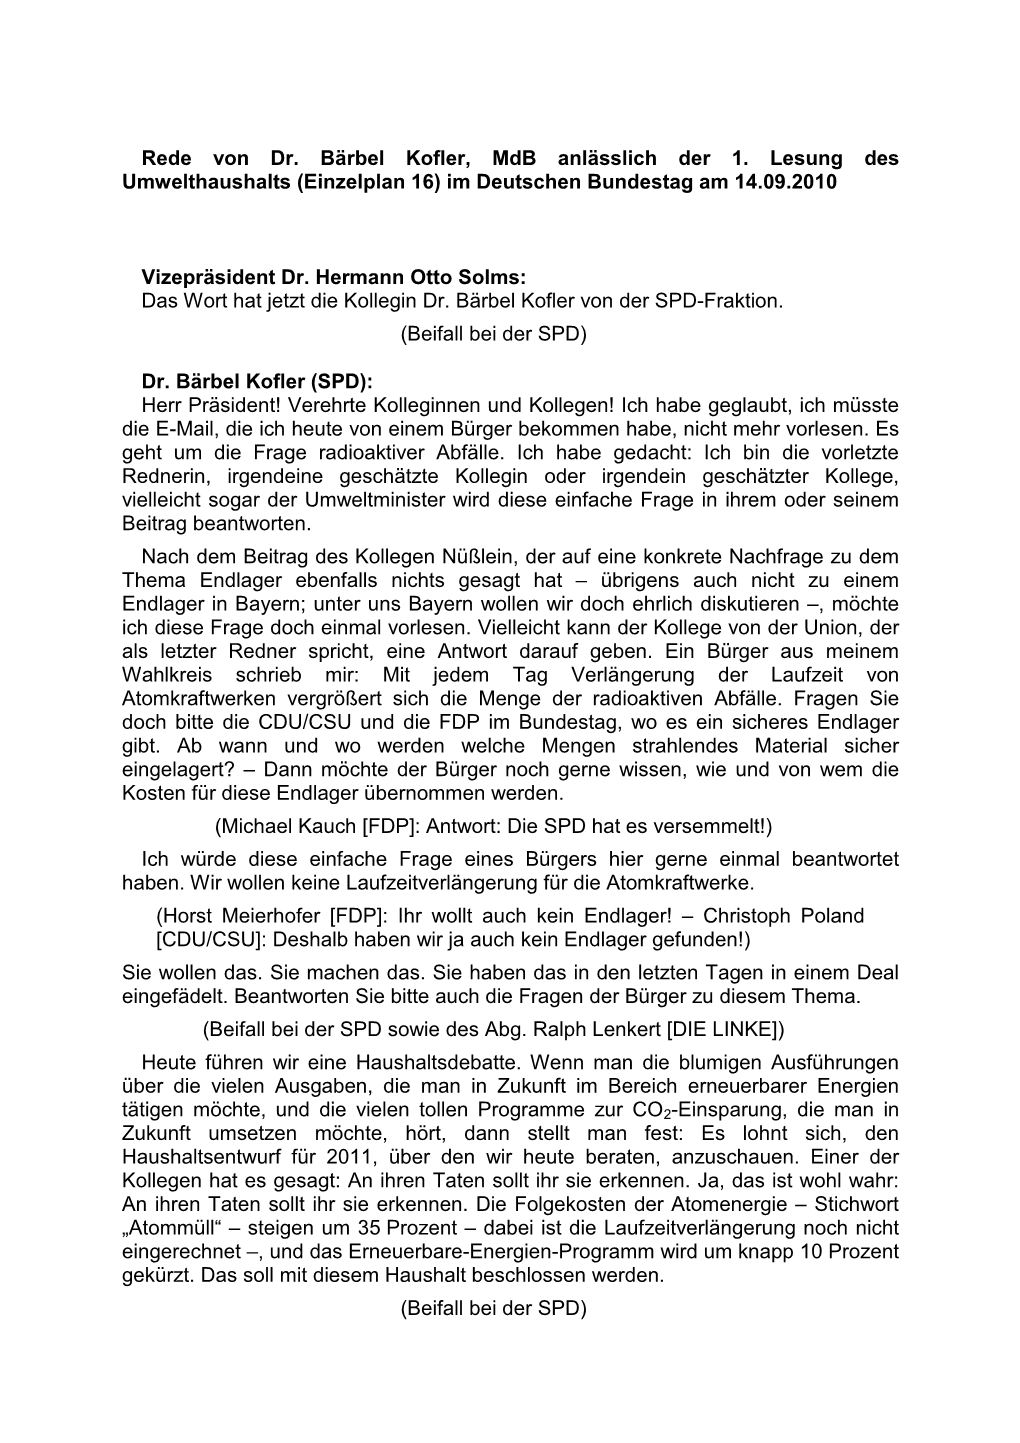 Rede Von Dr. Bärbel Kofler, Mdb Anlässlich Der 1. Lesung Des Umwelthaushalts (Einzelplan 16) Im Deutschen Bundestag Am 14.09.2010